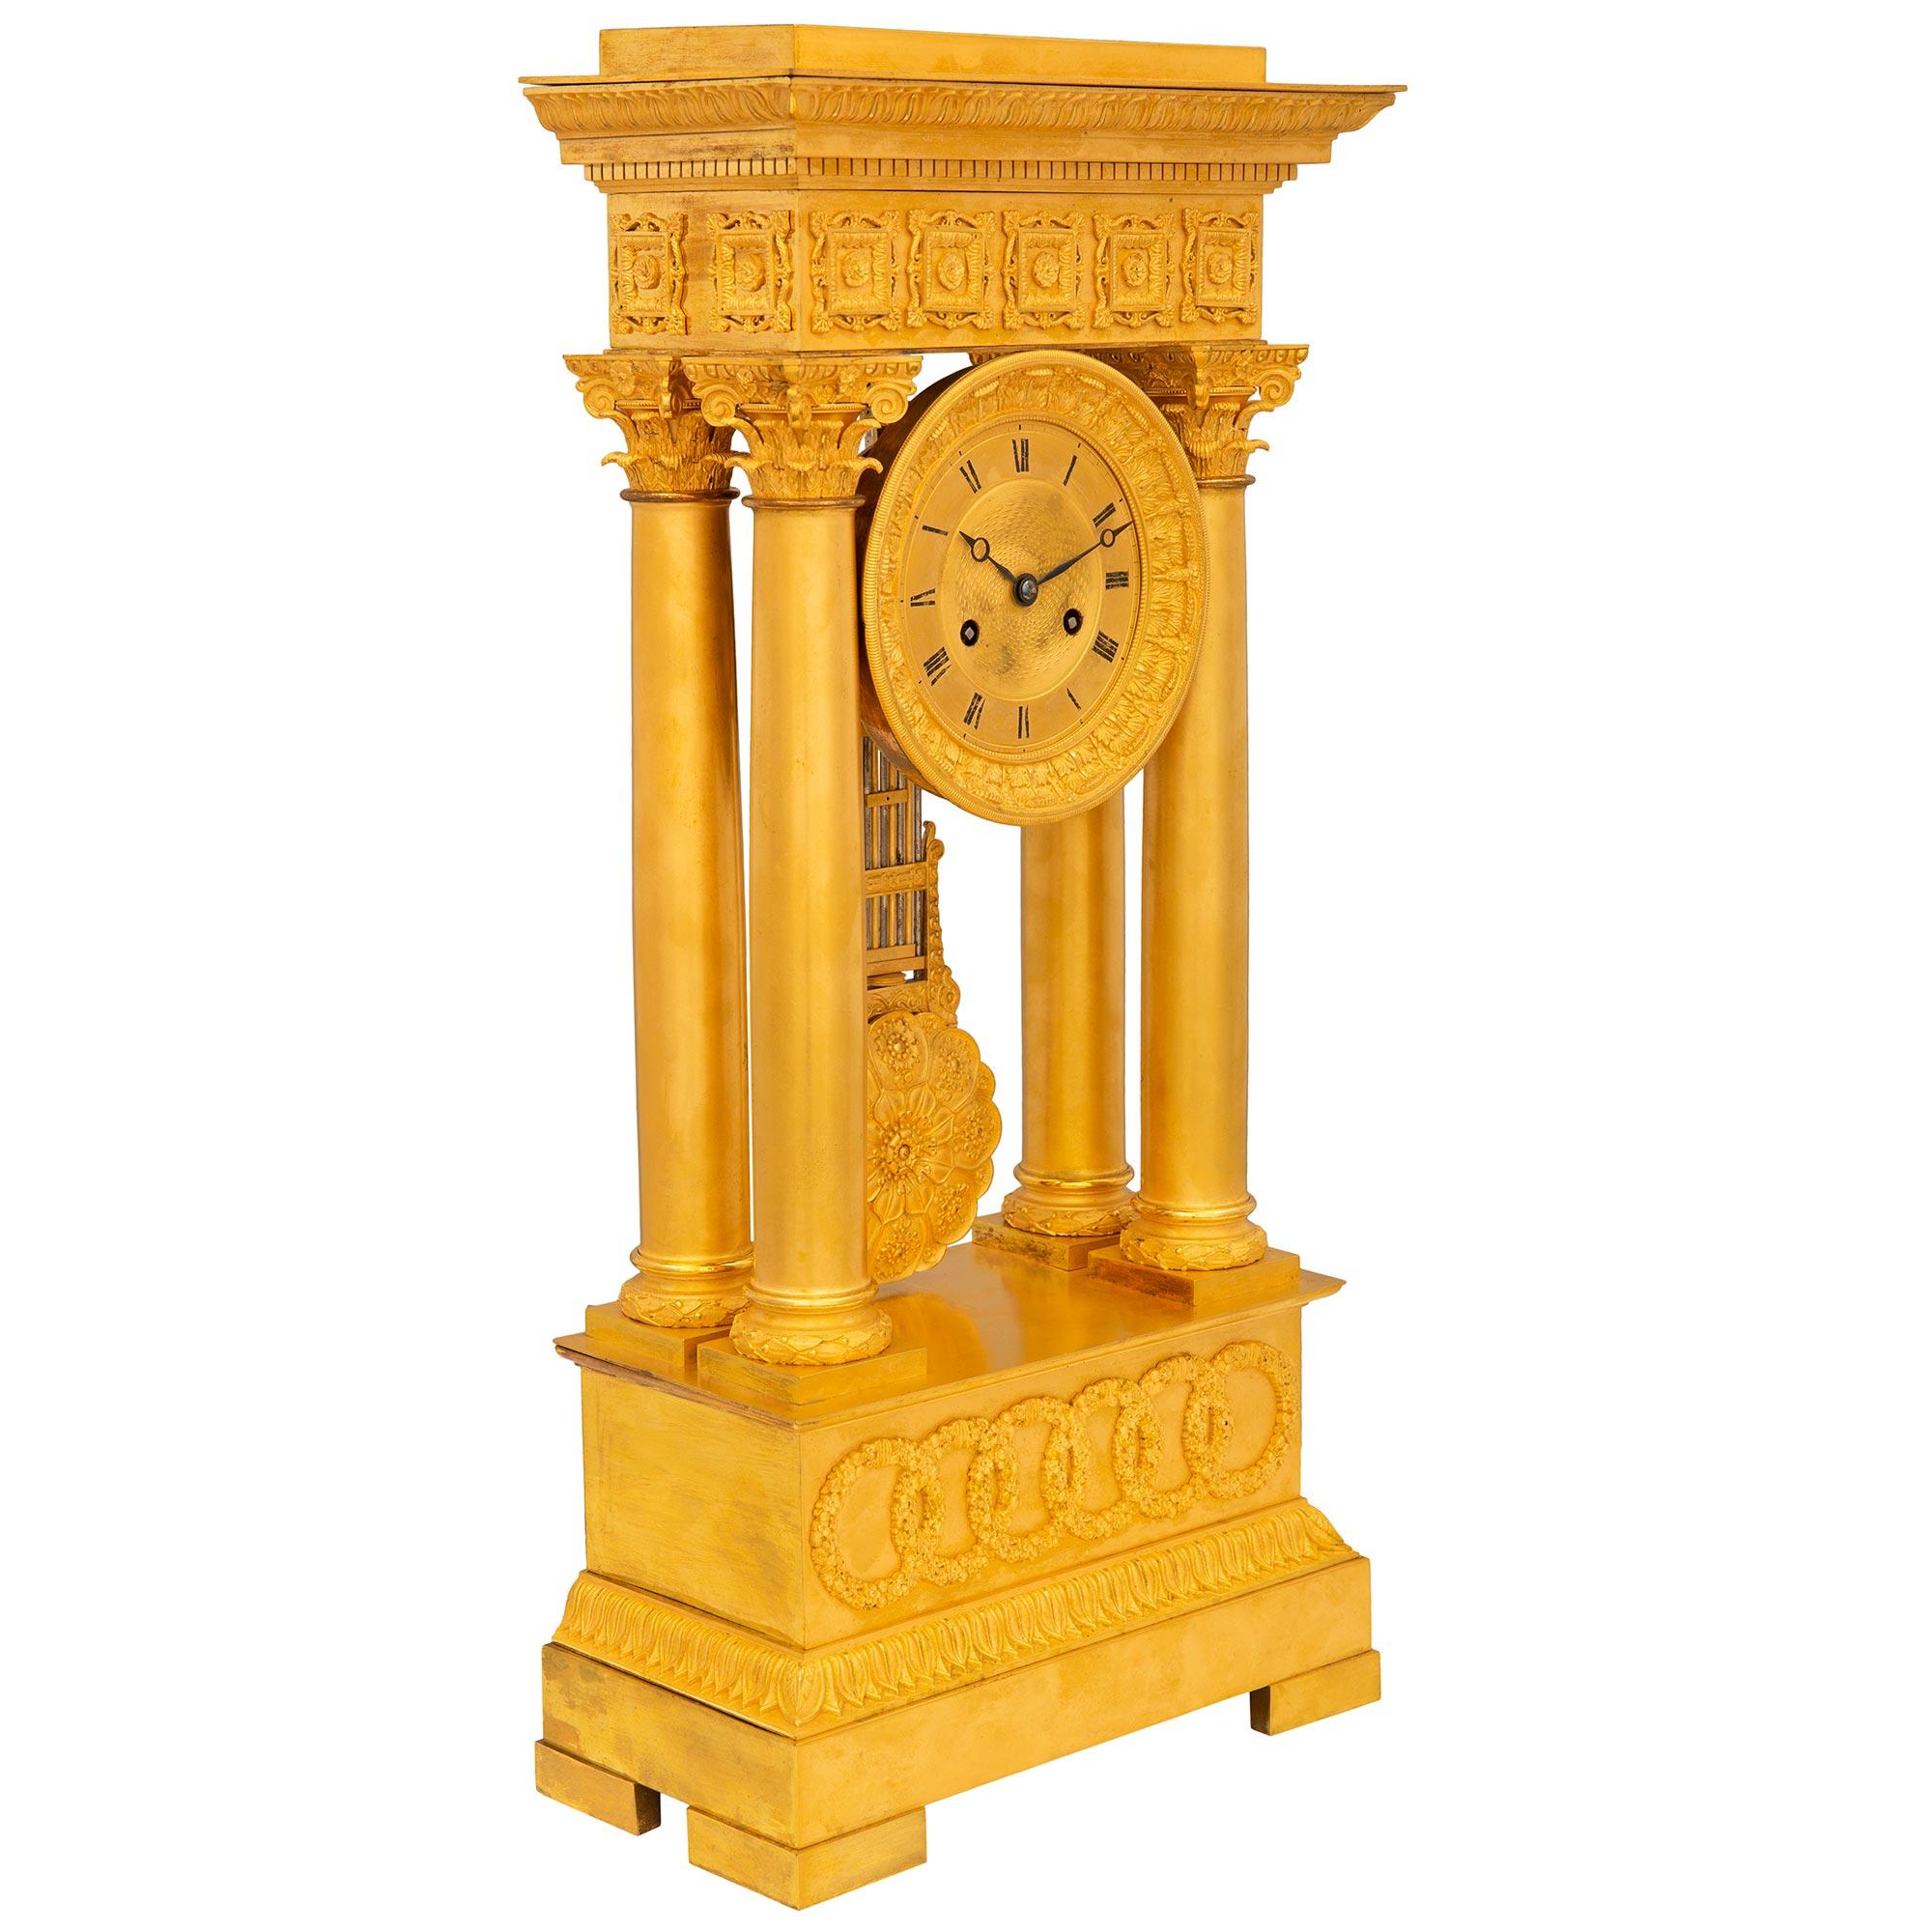 Eine exquisite französische Portikusuhr im Empire-Stil aus der Mitte des 19. Die Uhr steht auf einem rechteckigen Sockel mit fein ziselierten Rändern und ineinandergreifenden Kreisen in satinierter und polierter Ausführung. Darüber befinden sich